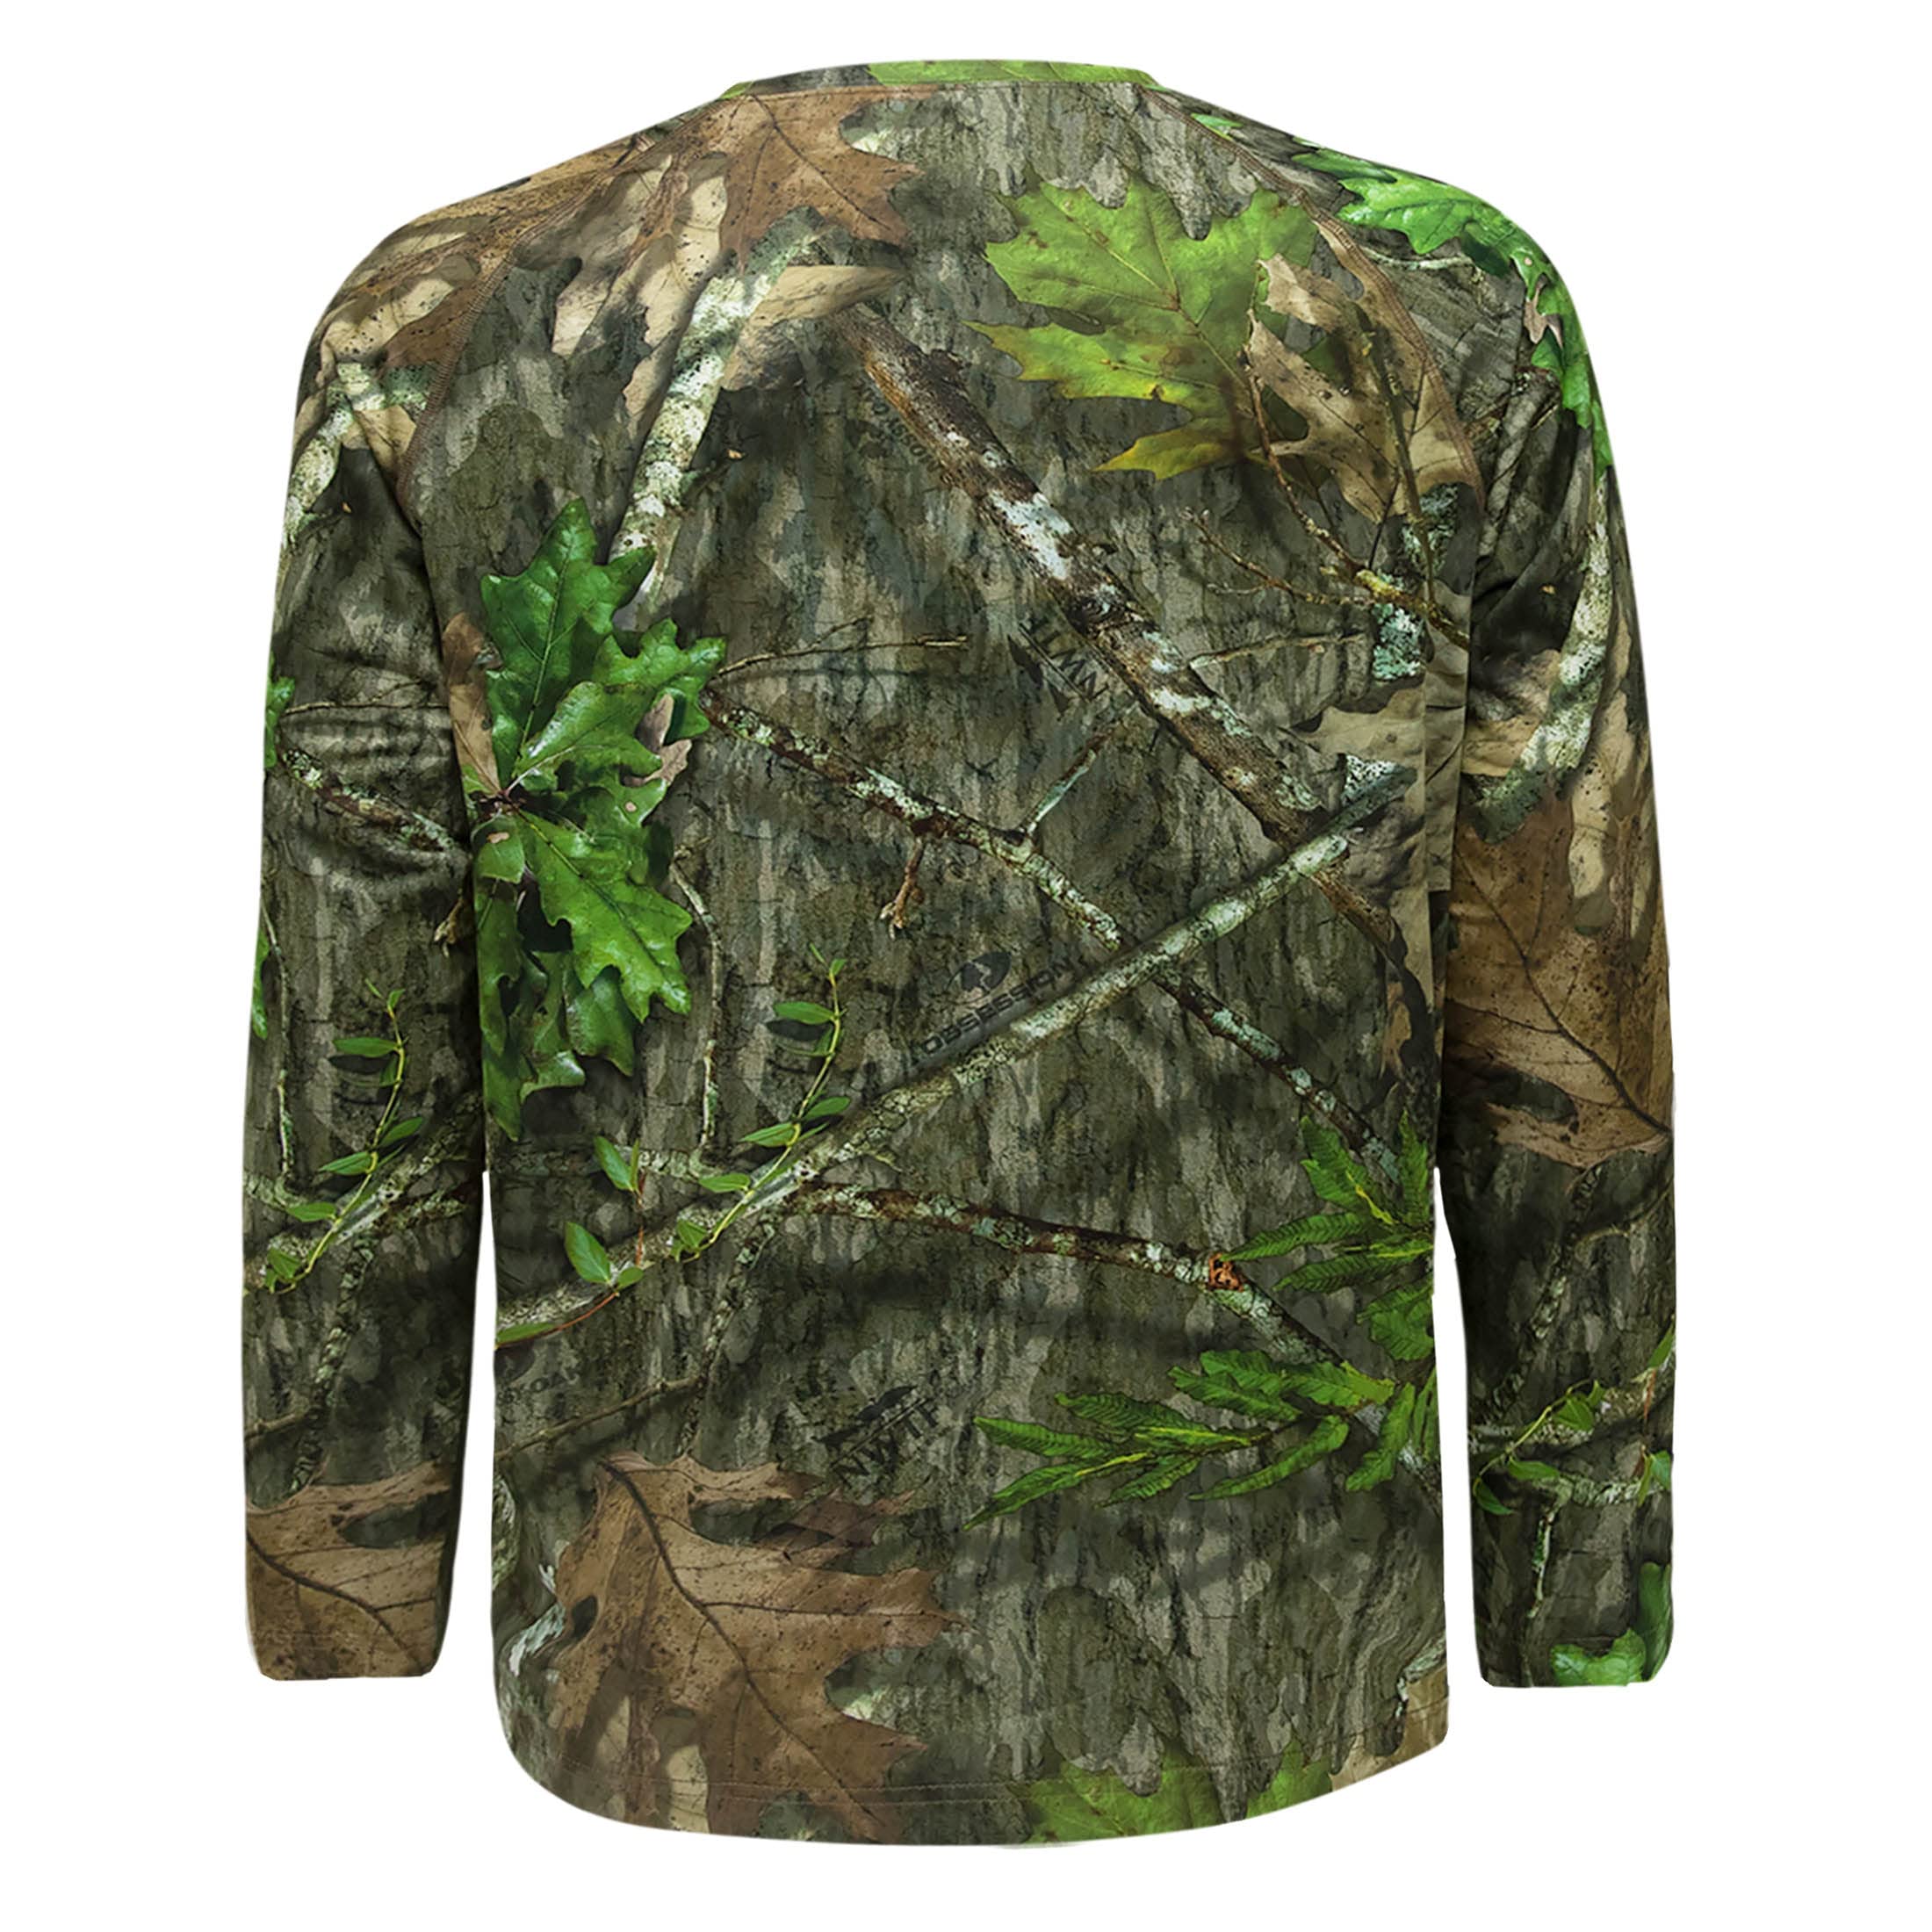 Mossy Oak Men's Camo Hunting Shirts Long Sleeve